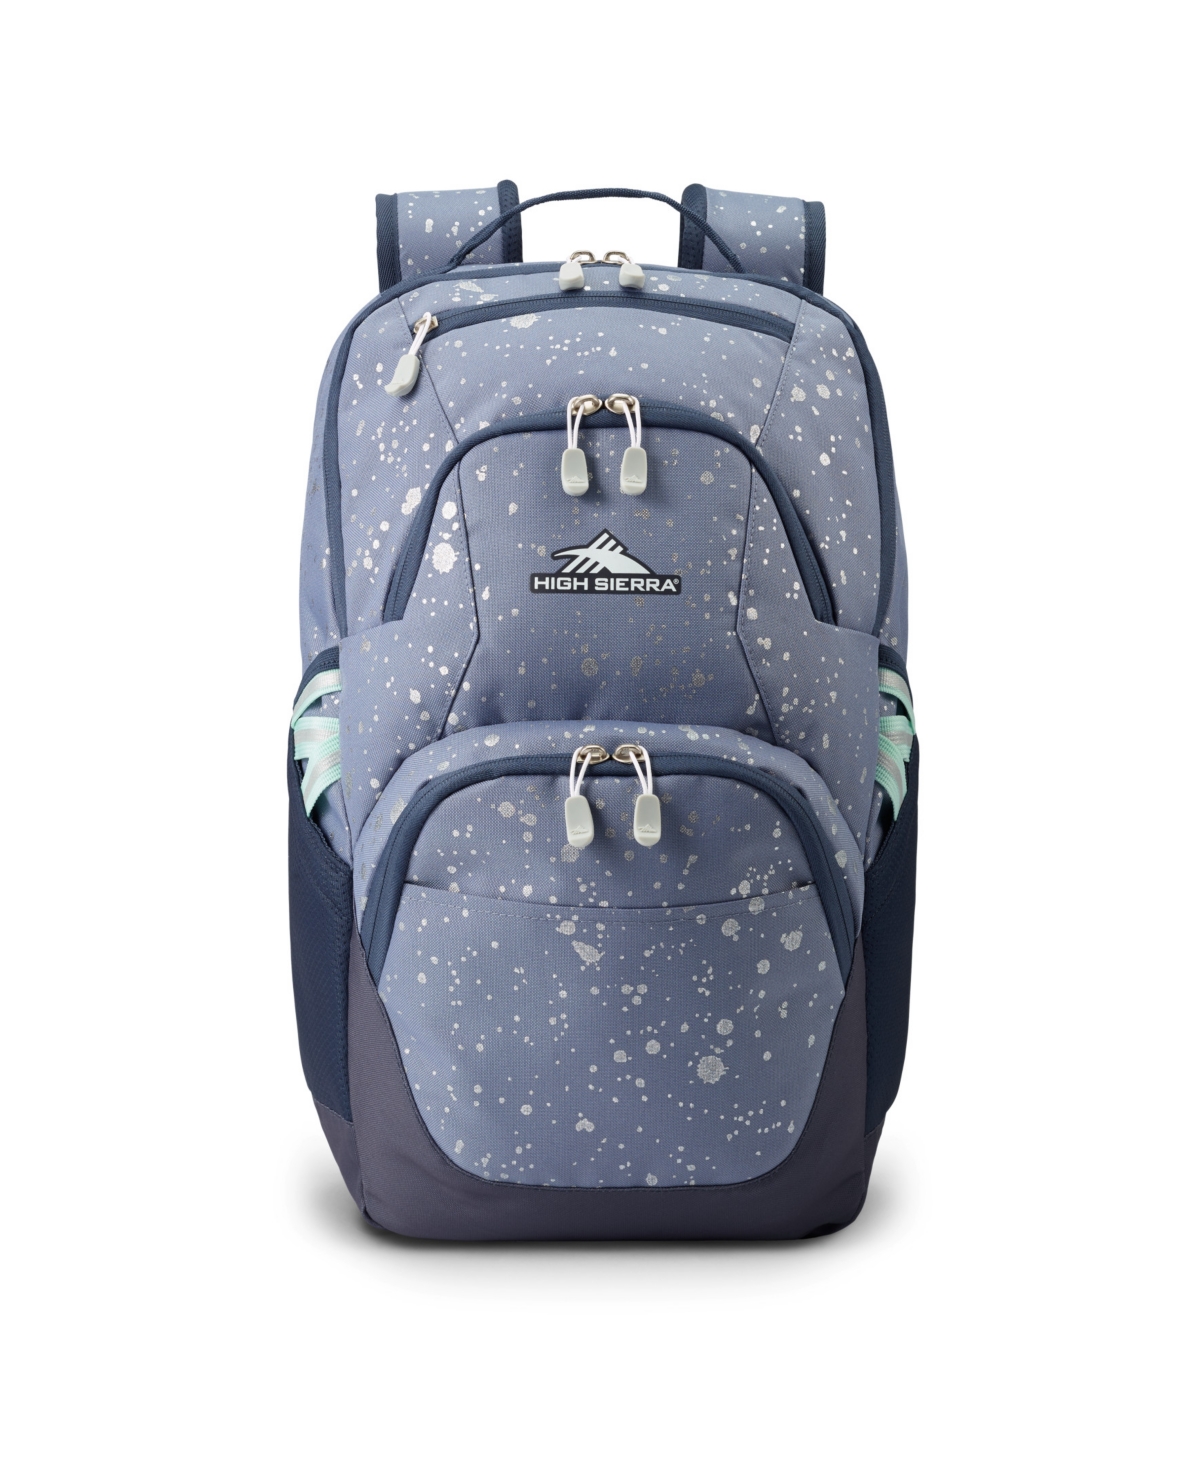 High Sierra Swoop Sg Backpack In Metallic Splatter